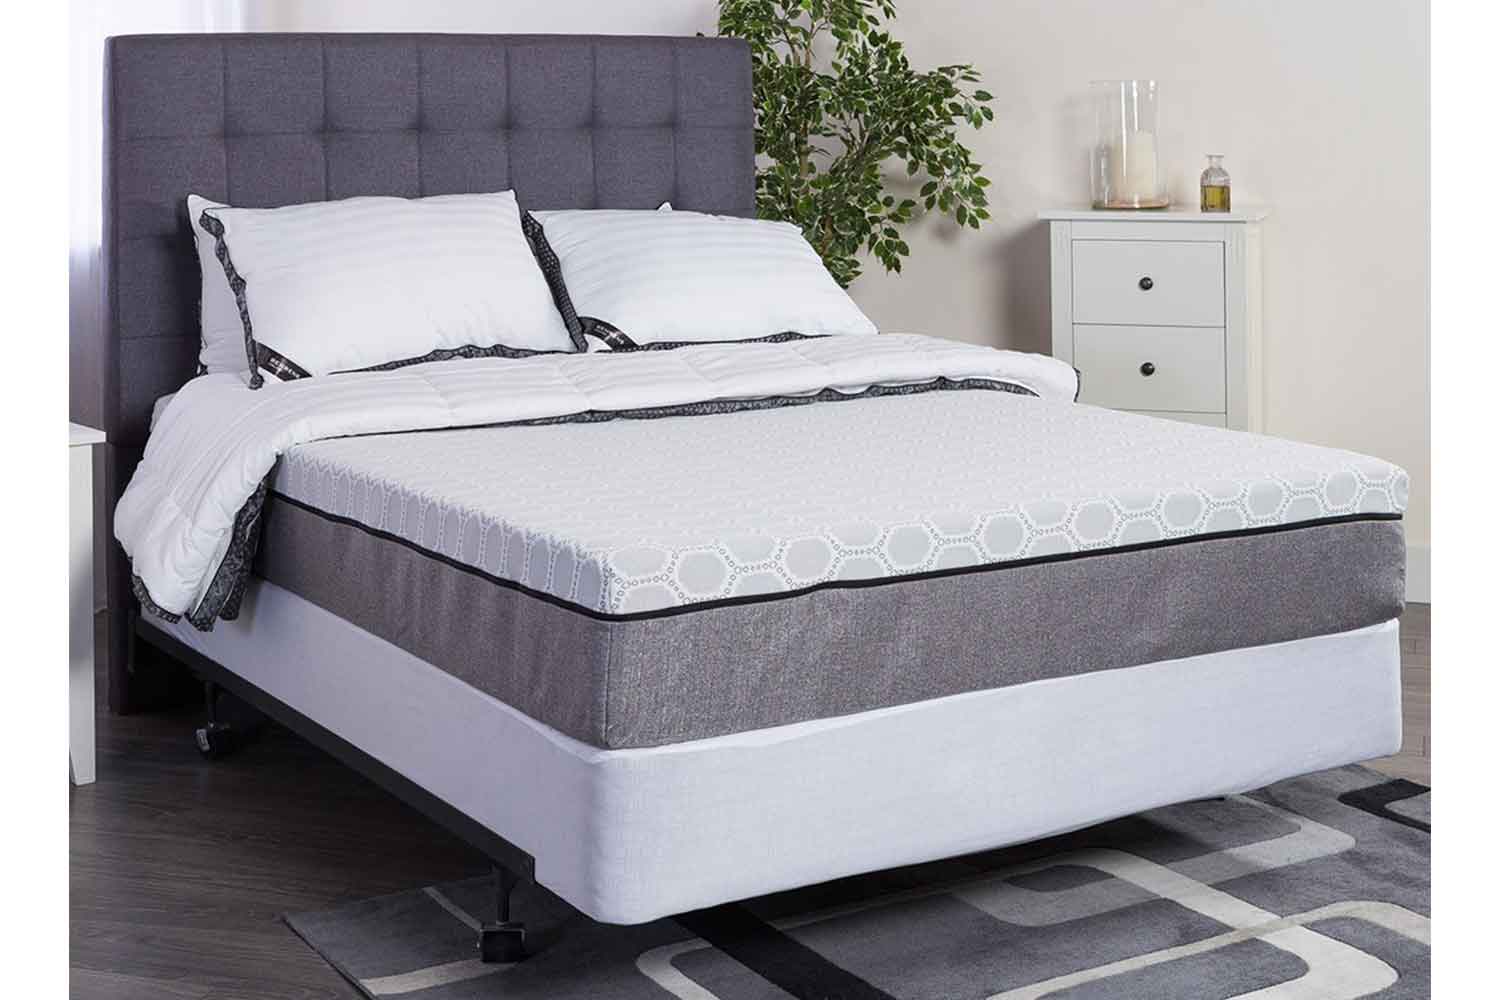 louisville bedding topandsides mattress cover